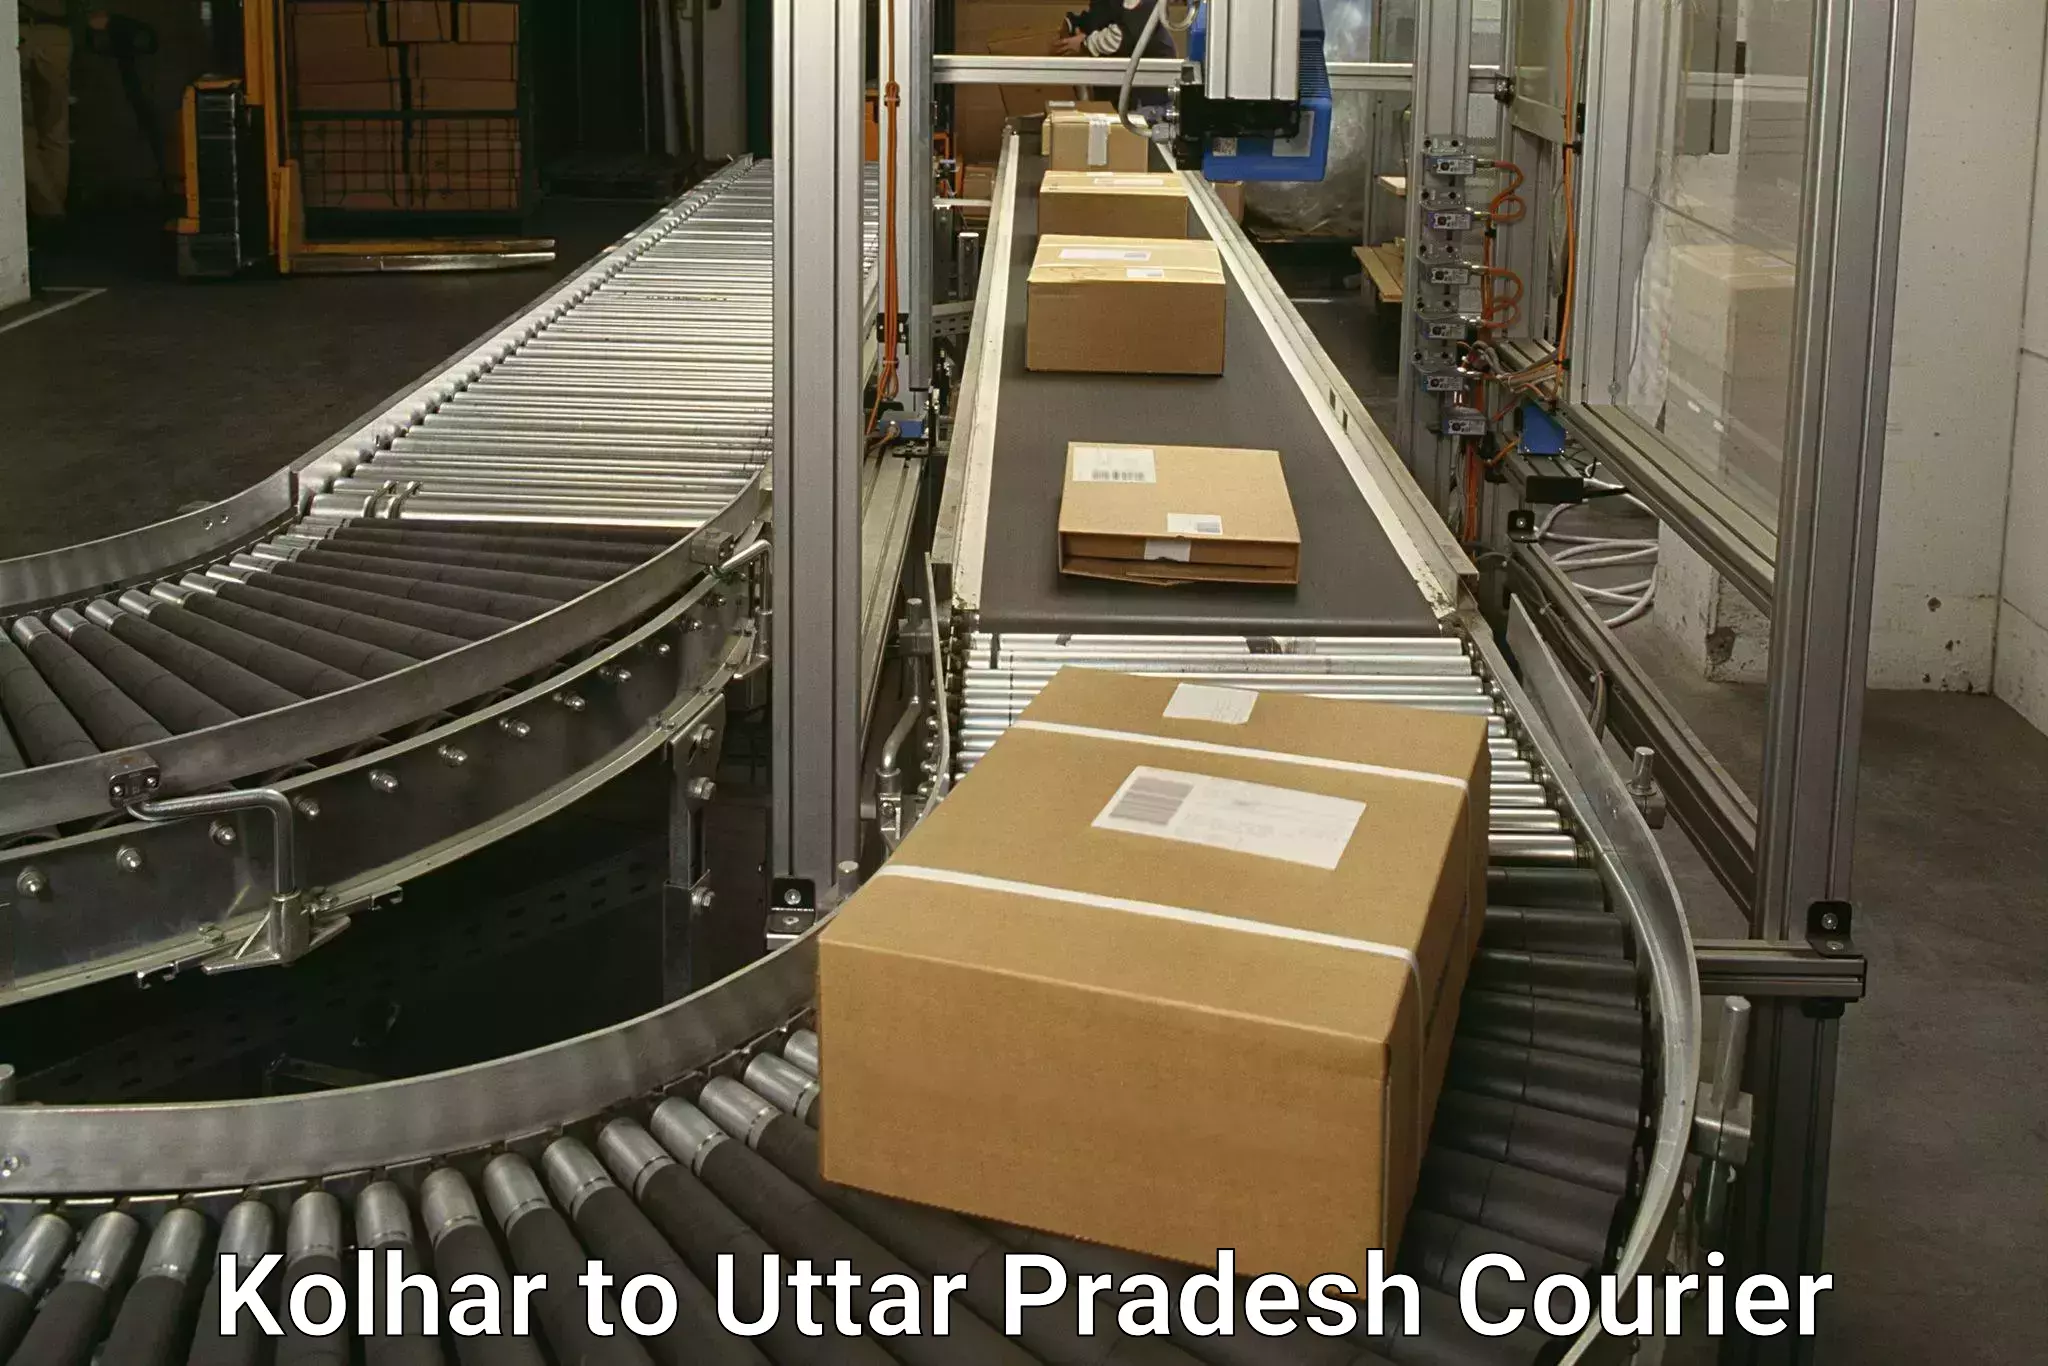 High-capacity parcel service Kolhar to Chitrakoot